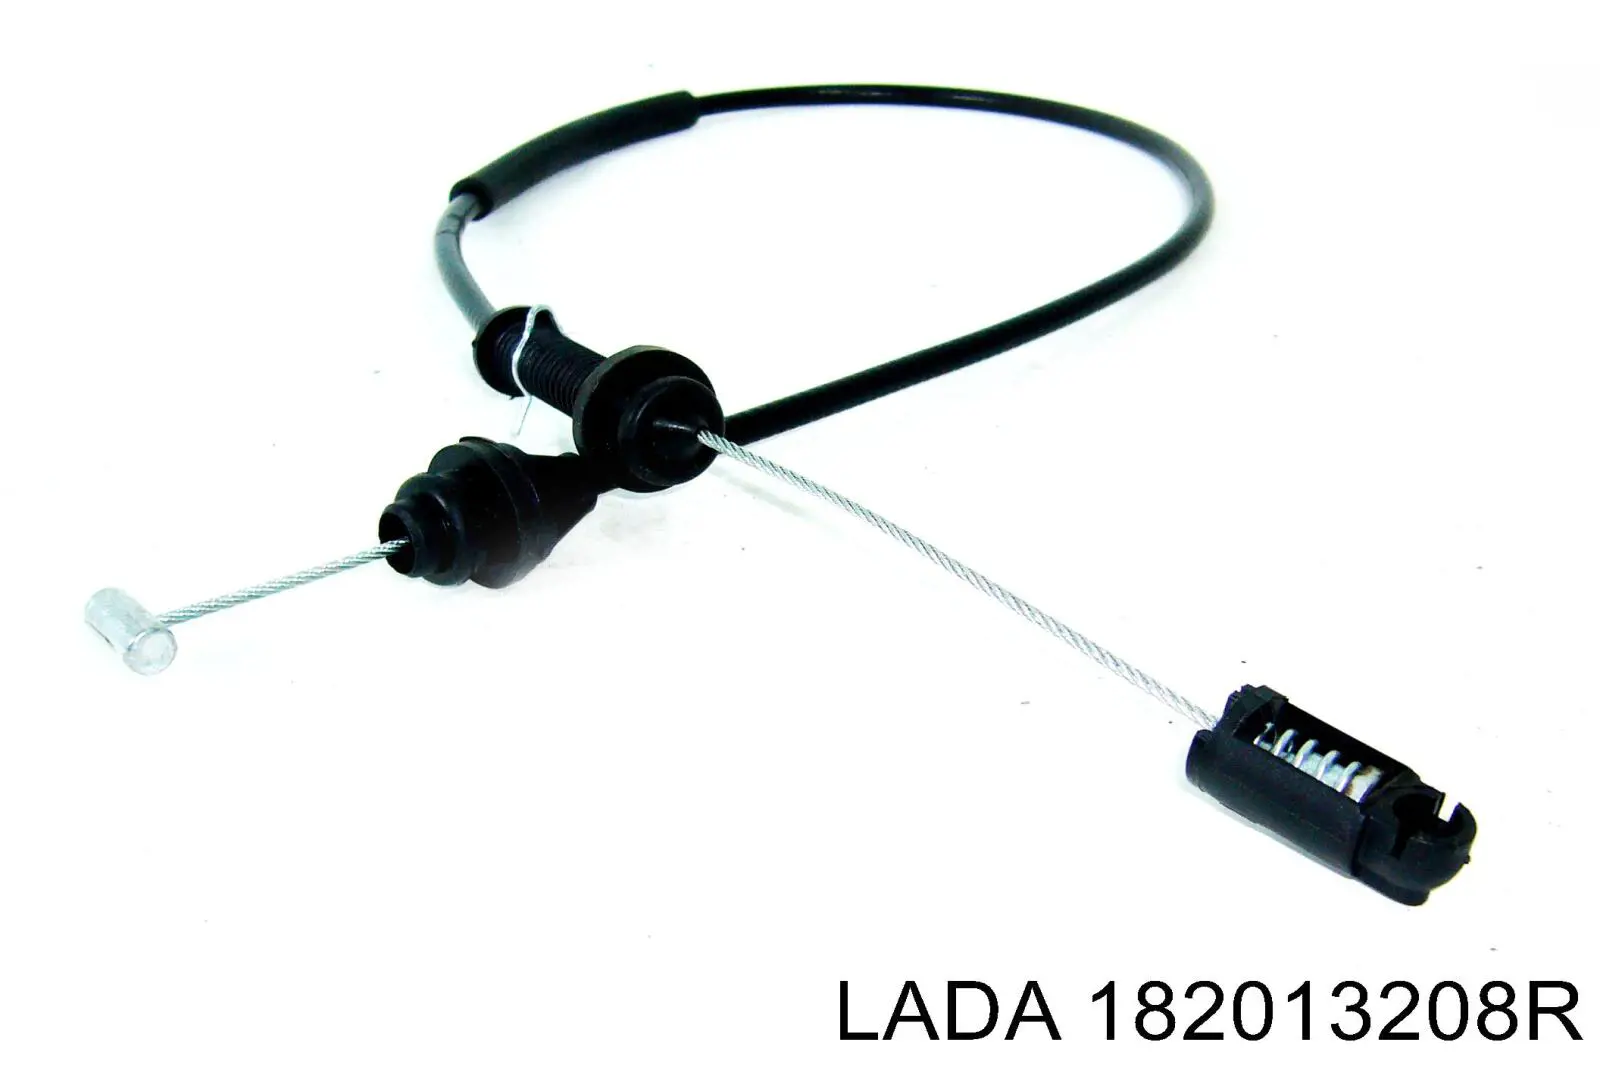 182013208R Lada cable del acelerador